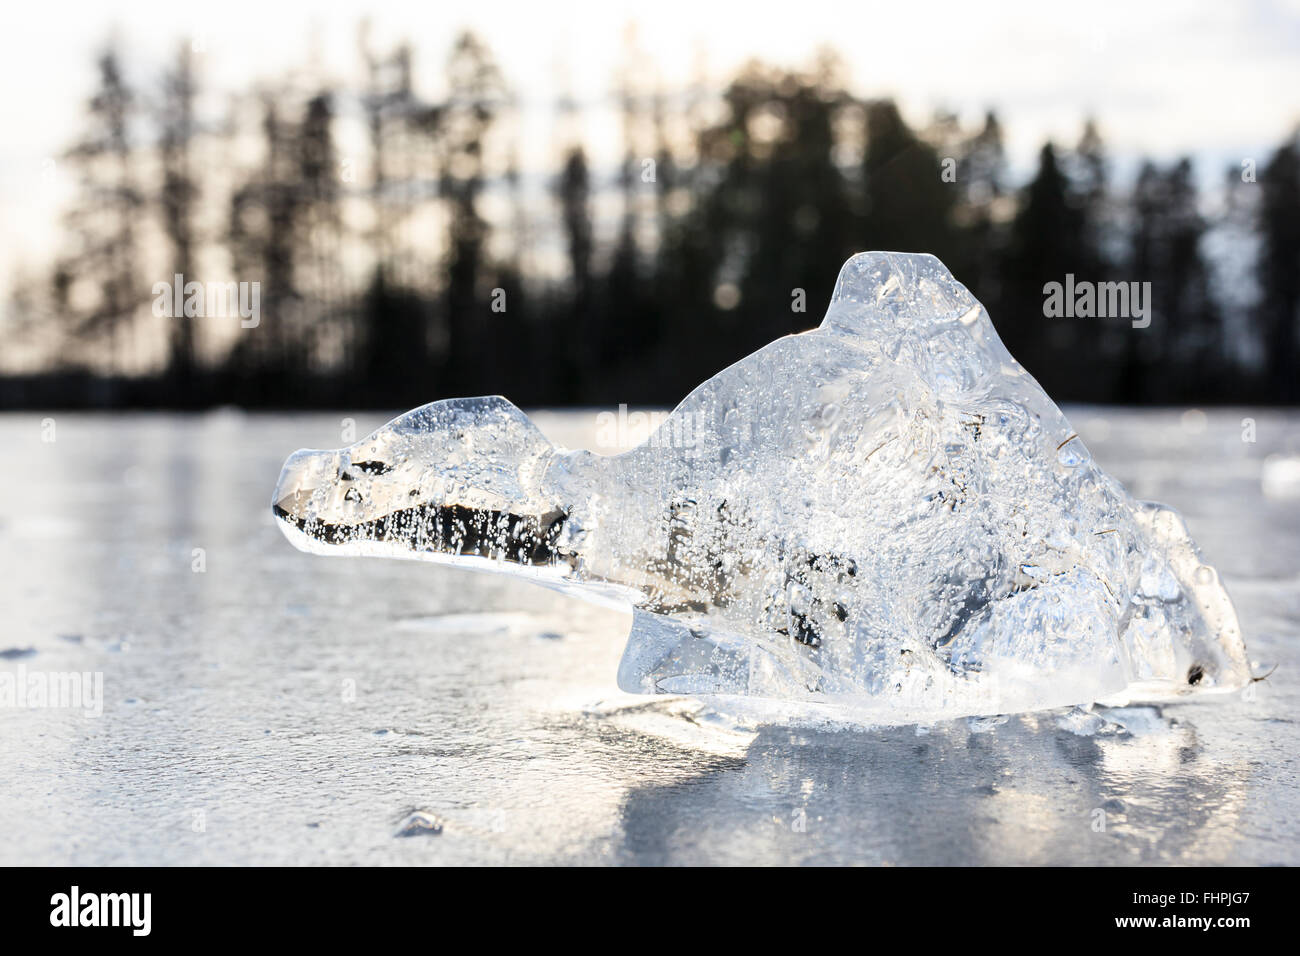 Bloc de glace ressemble à des animaux imagerie Banque D'Images